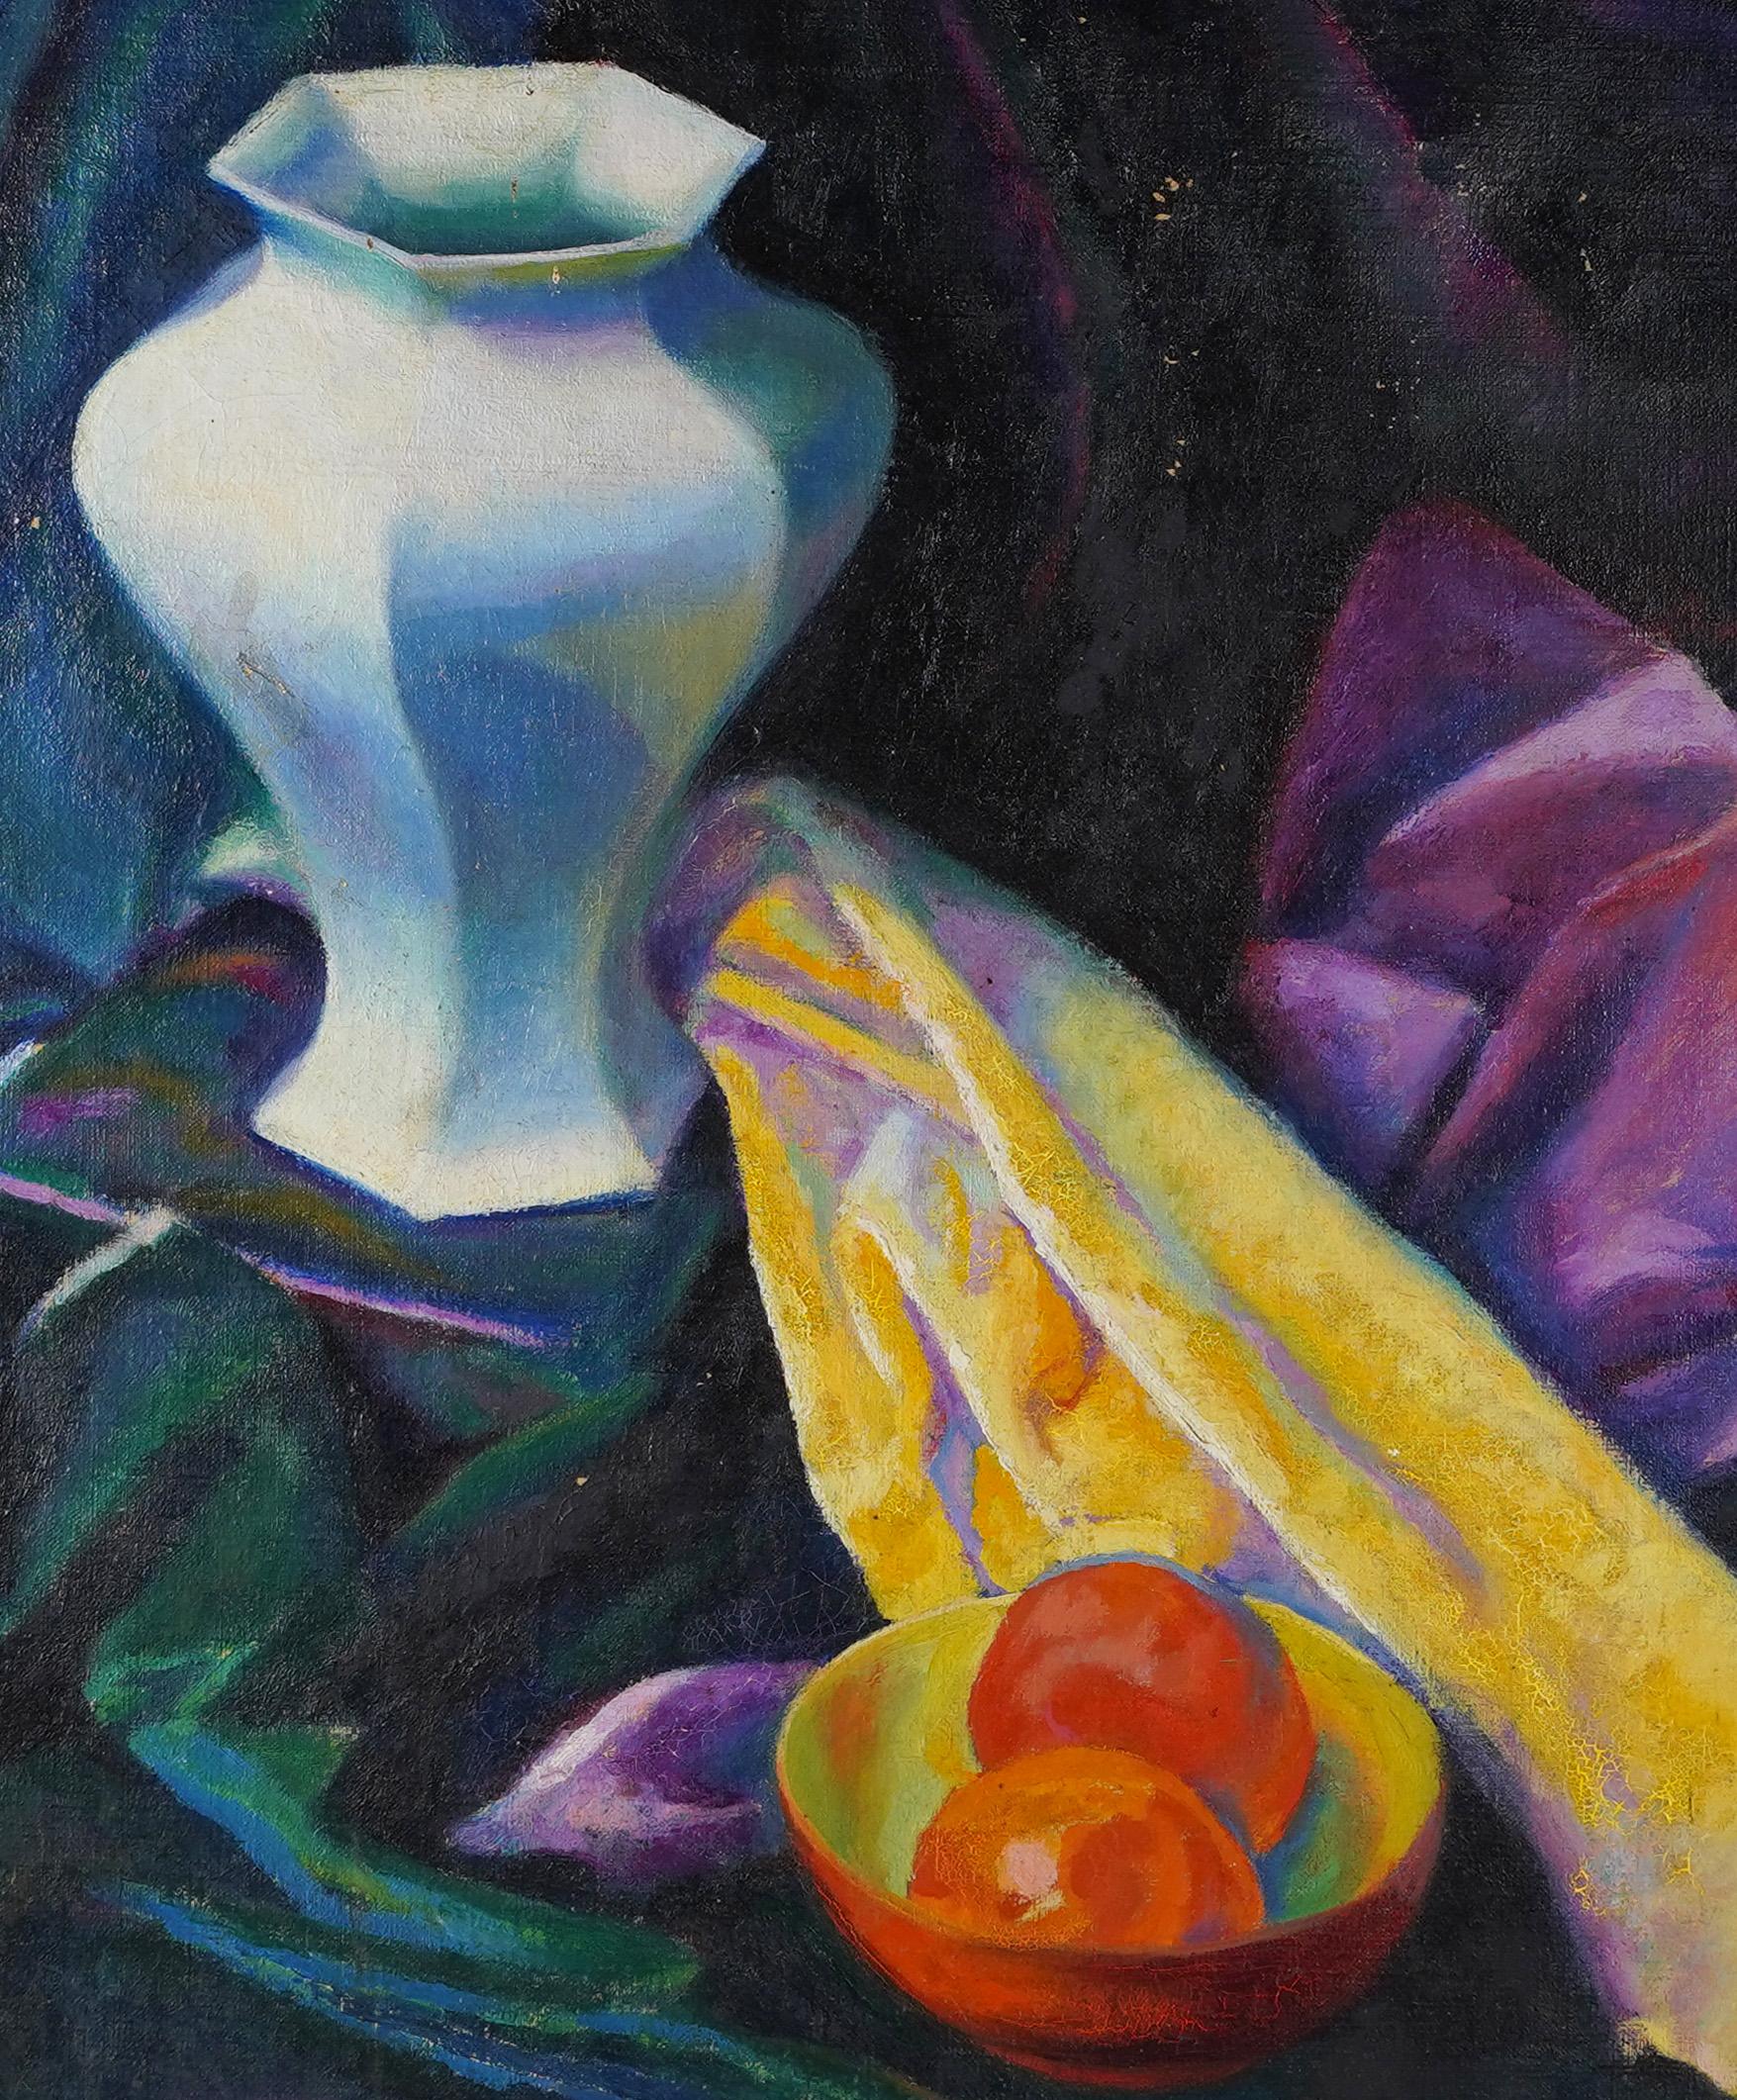 Vieille peinture à l'huile impressionniste américaine de Kathryn Logan Luke. Huile sur toile, vers 1921.  Logé dans un cadre d'époque en bois doré.   Taille de l'image, 24L x 26H. 
